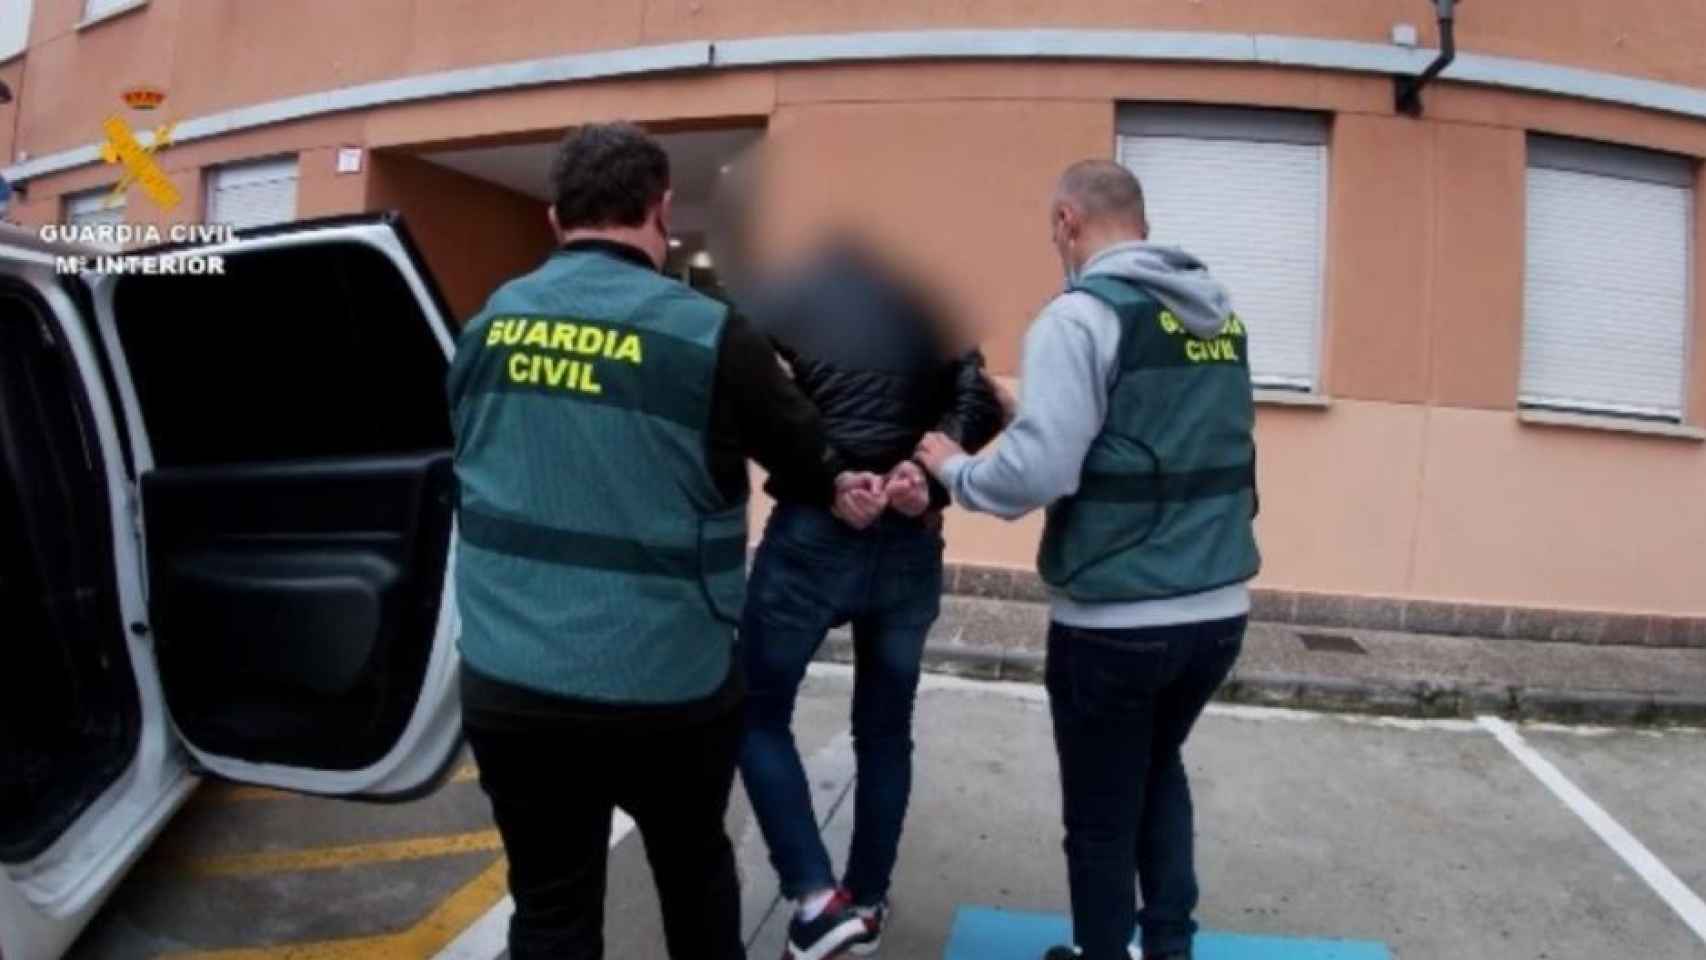 La Guardia Civil arresta a un abusador de menores, en una imagen de archivo.